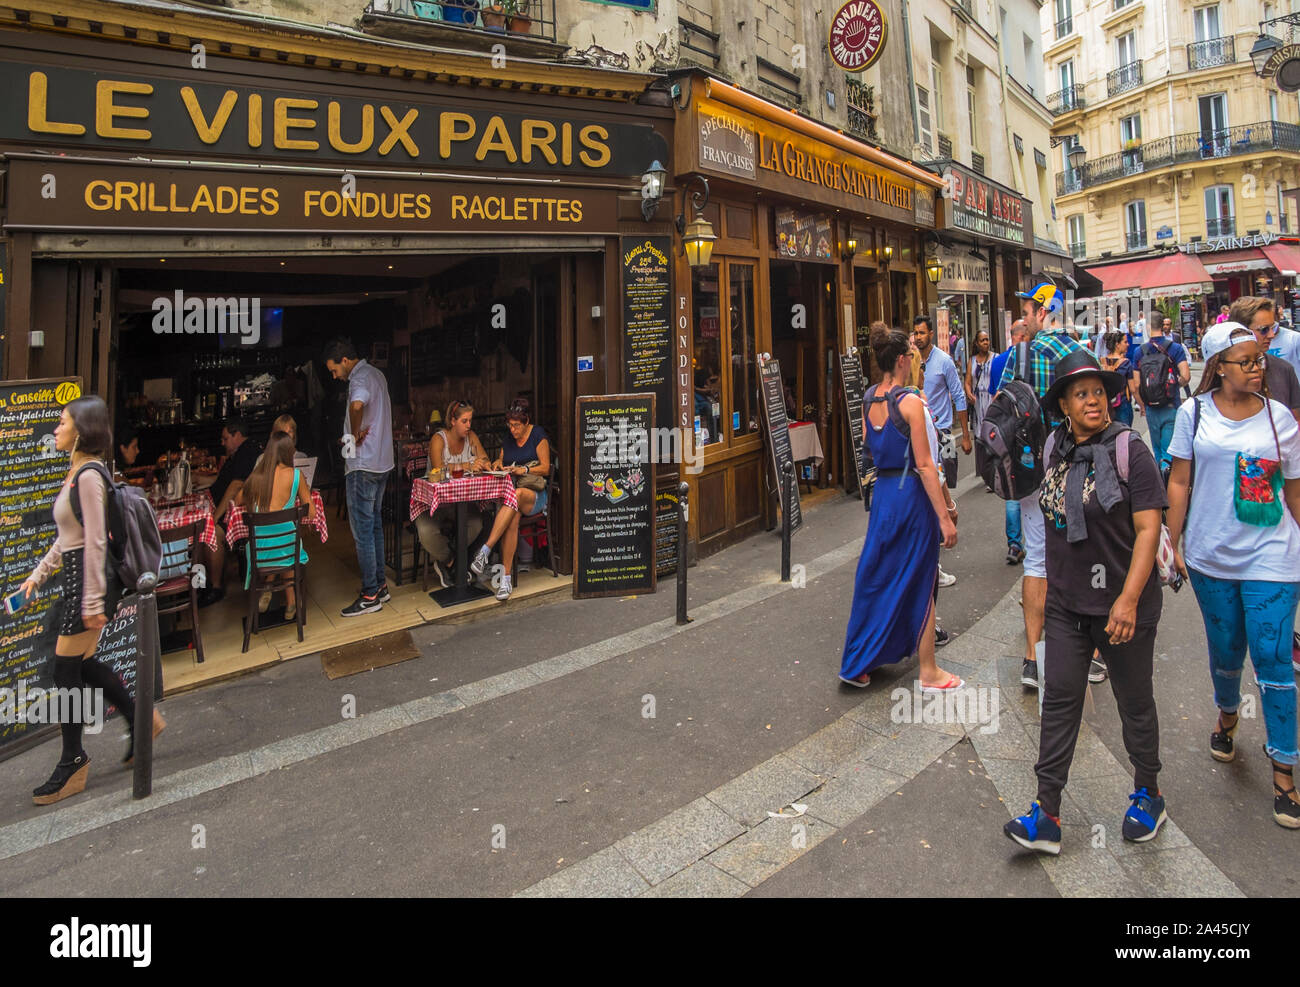 Scène de rue à l'avant du restaurant "le vieux paris" Banque D'Images